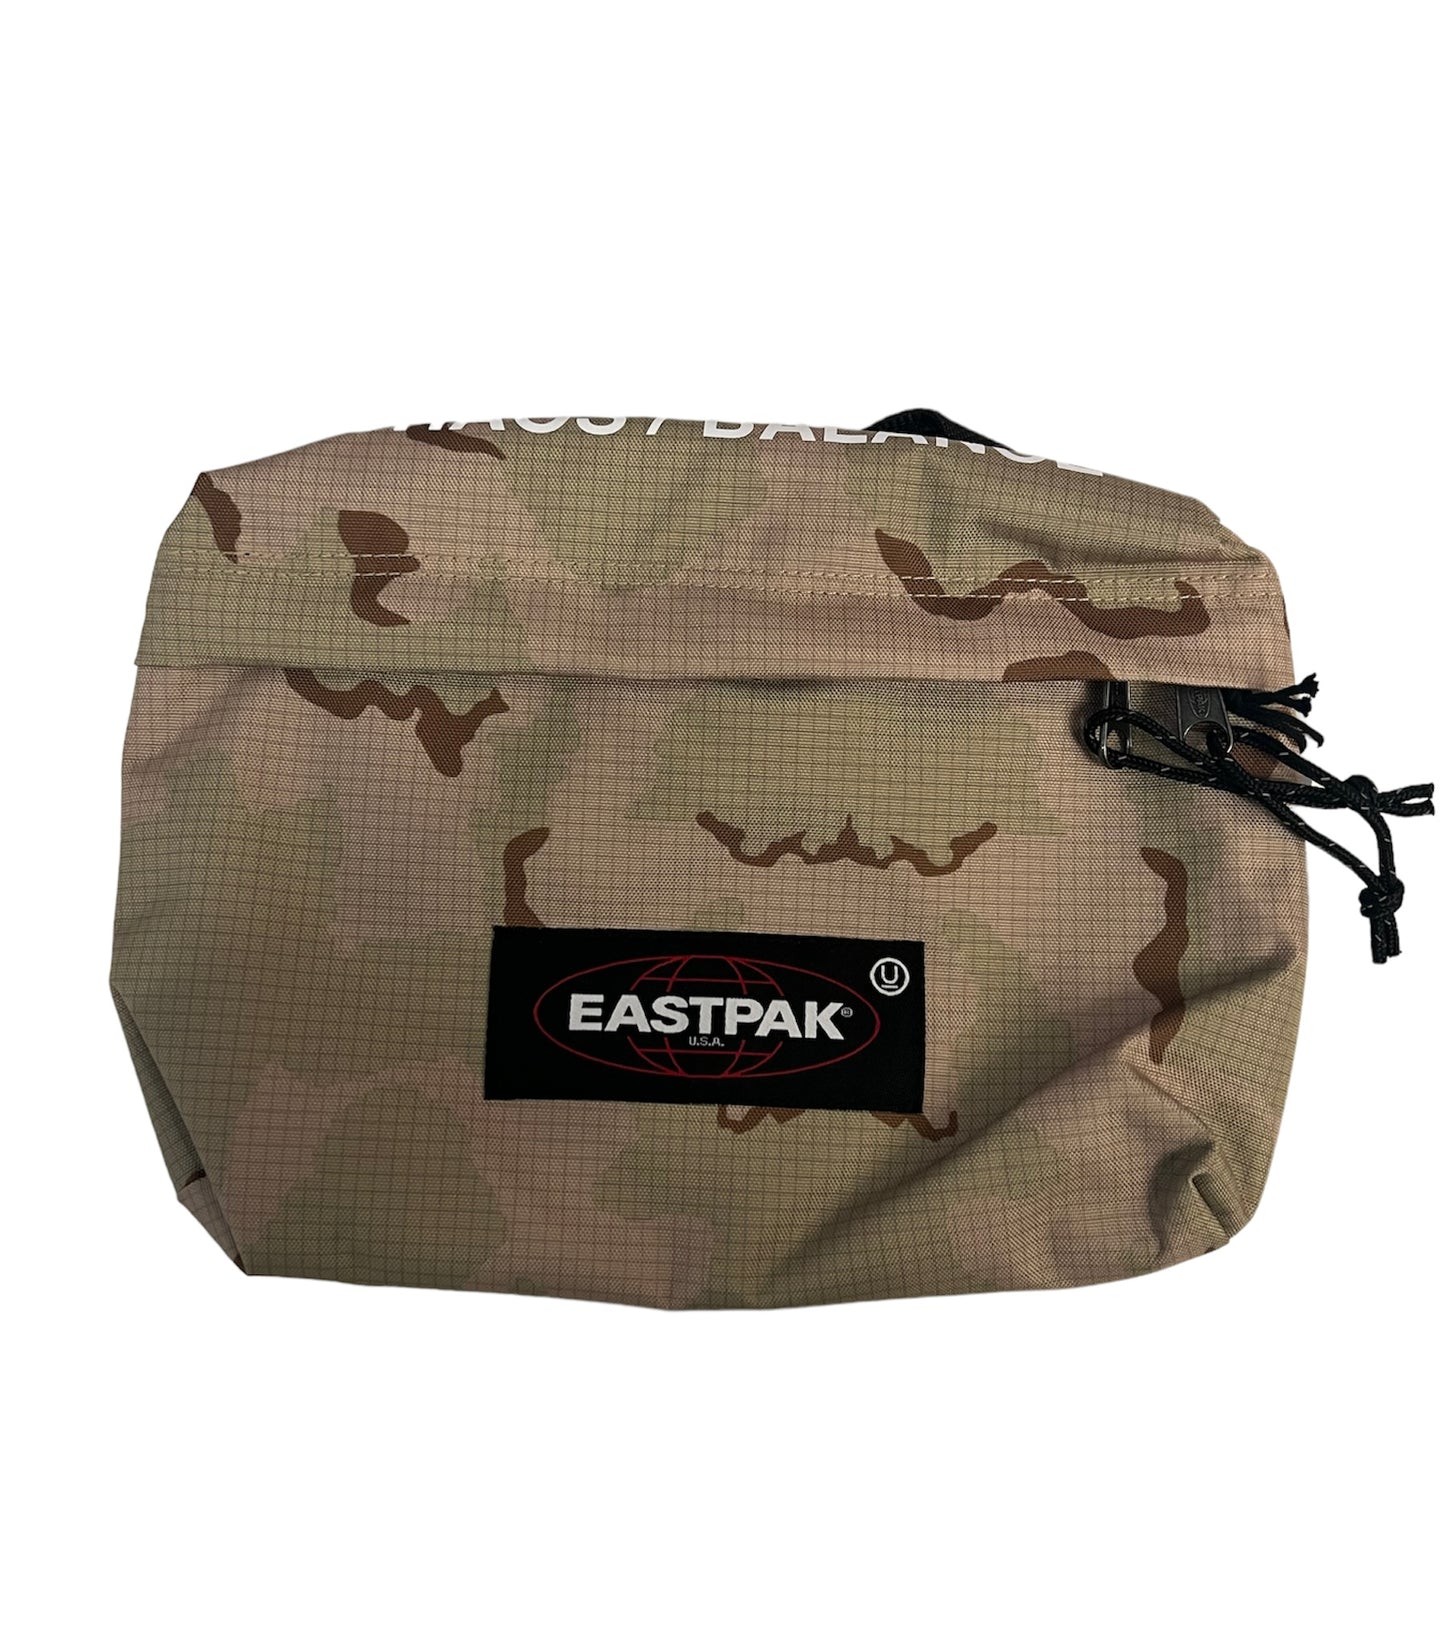 Eastpak/Undercover Side Bag “Desert Camo”